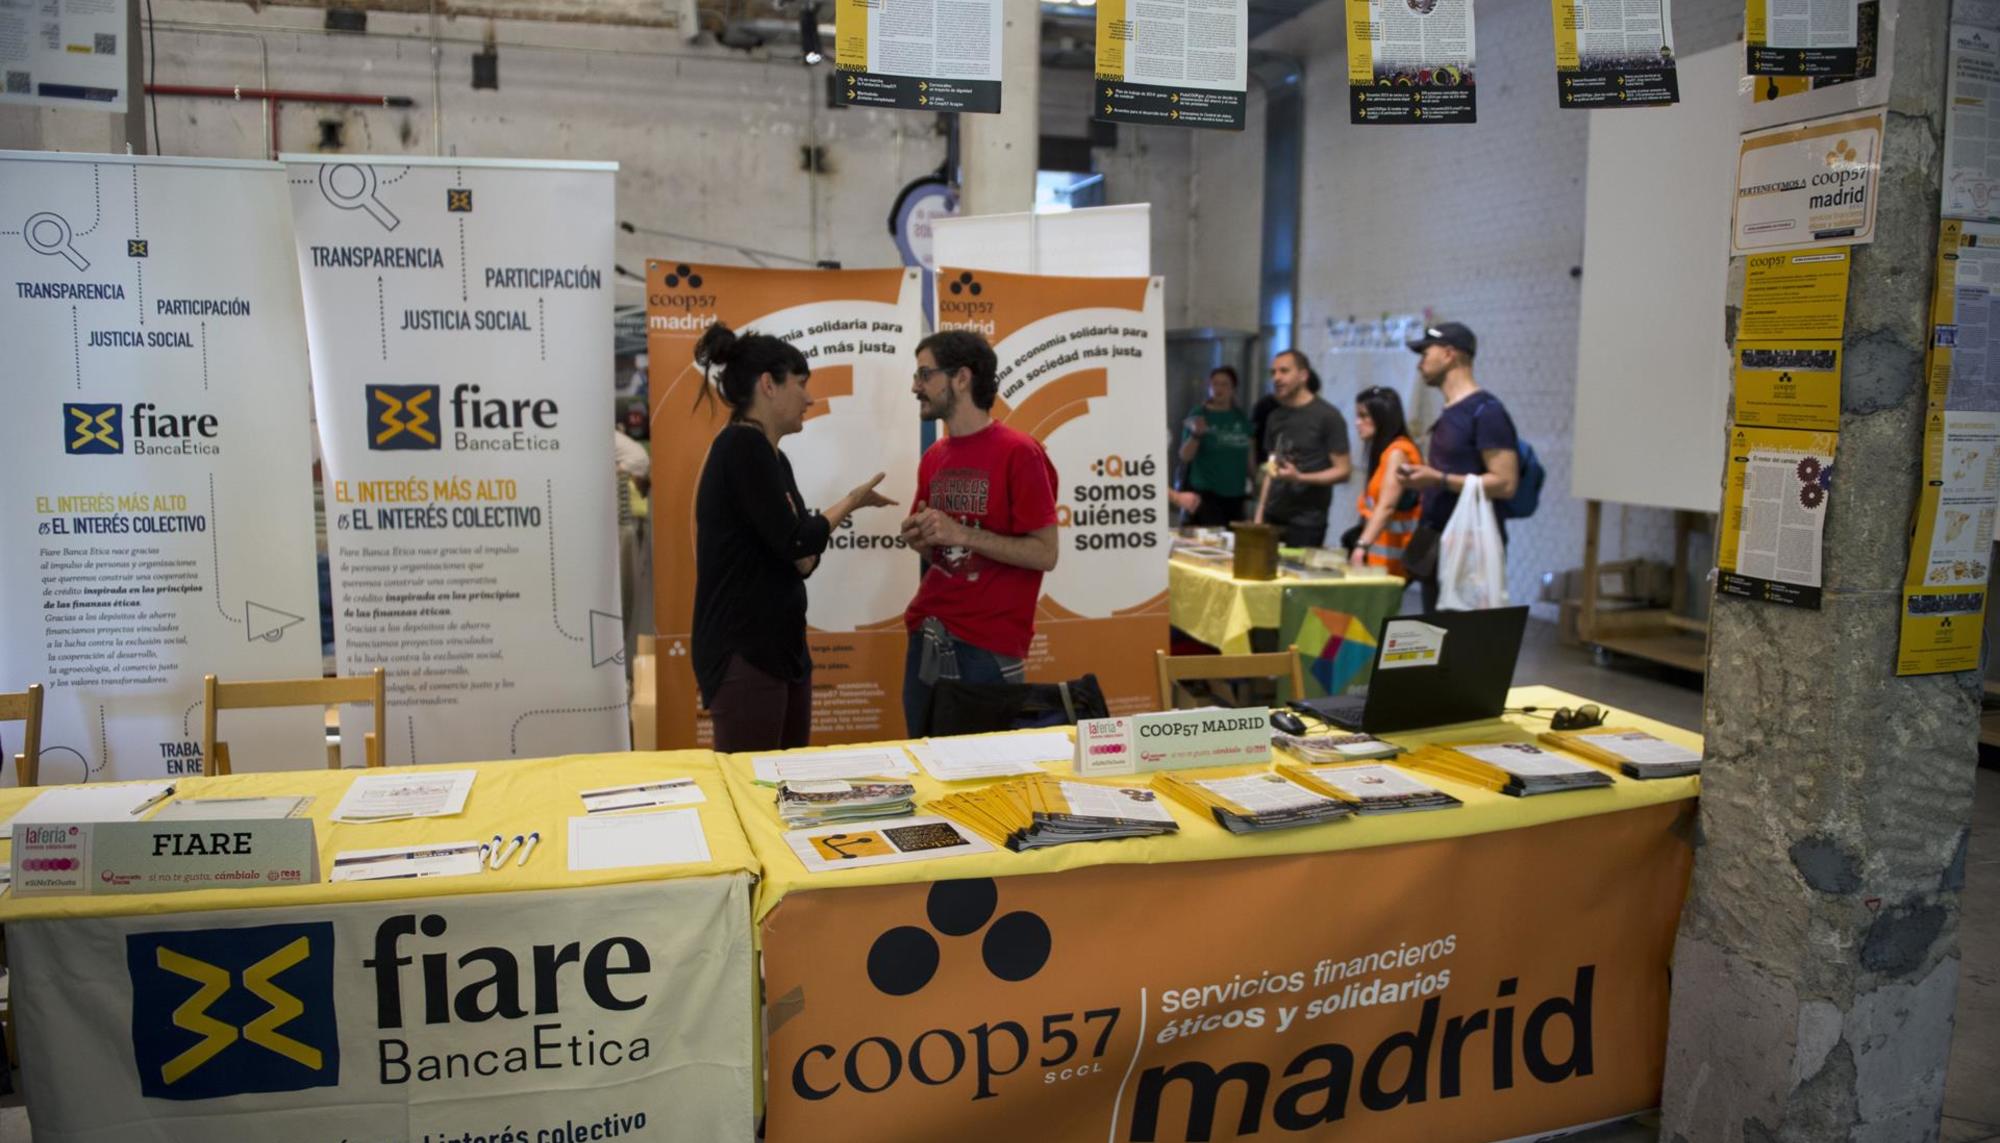 Feria de Economía Social en Madrid Coop57